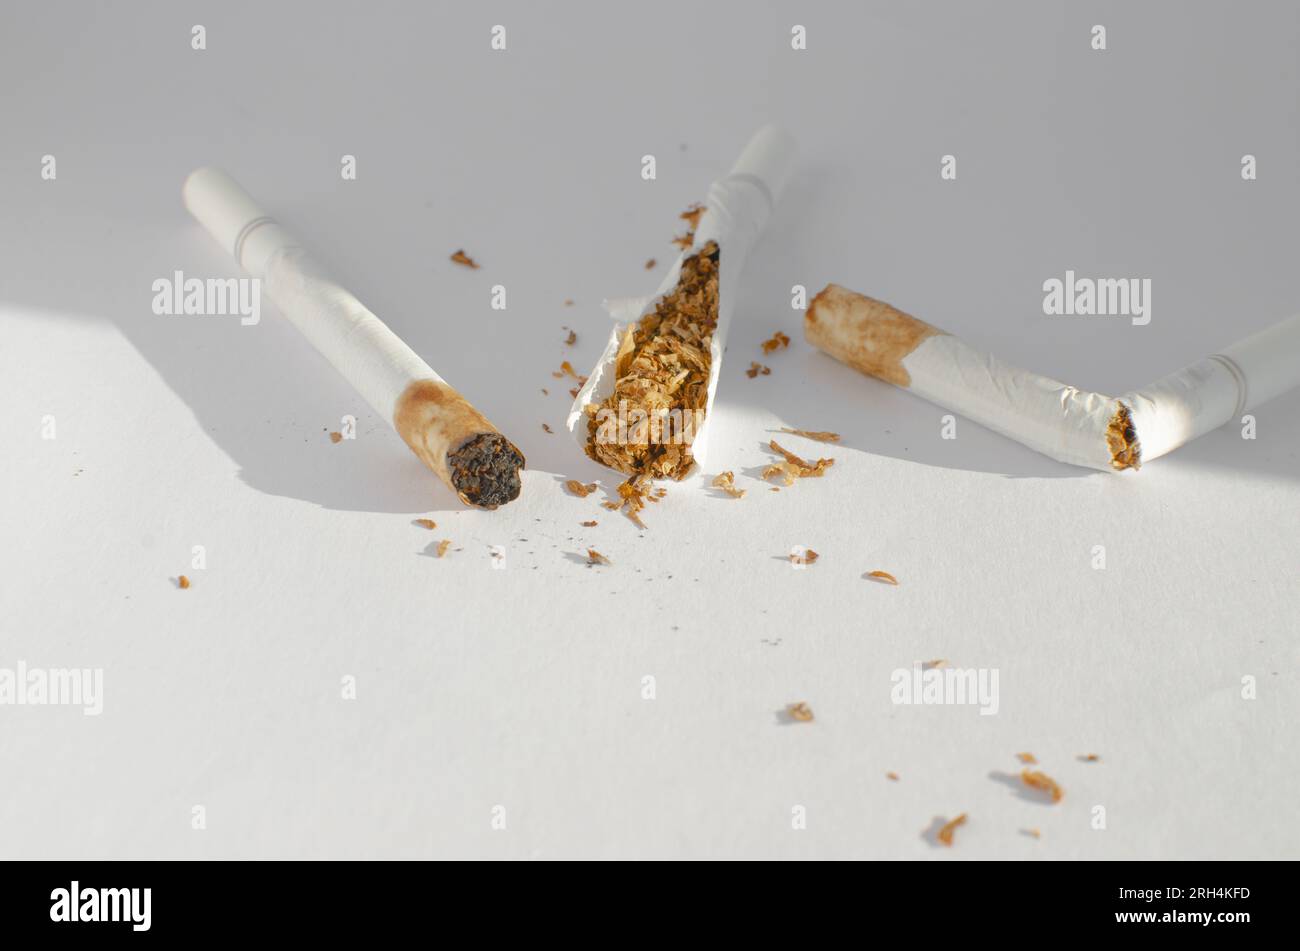 Dettaglio delle sigarette su una superficie bianca, che simboleggia i rischi per la salute e le malattie associate al fumo. Foto Stock